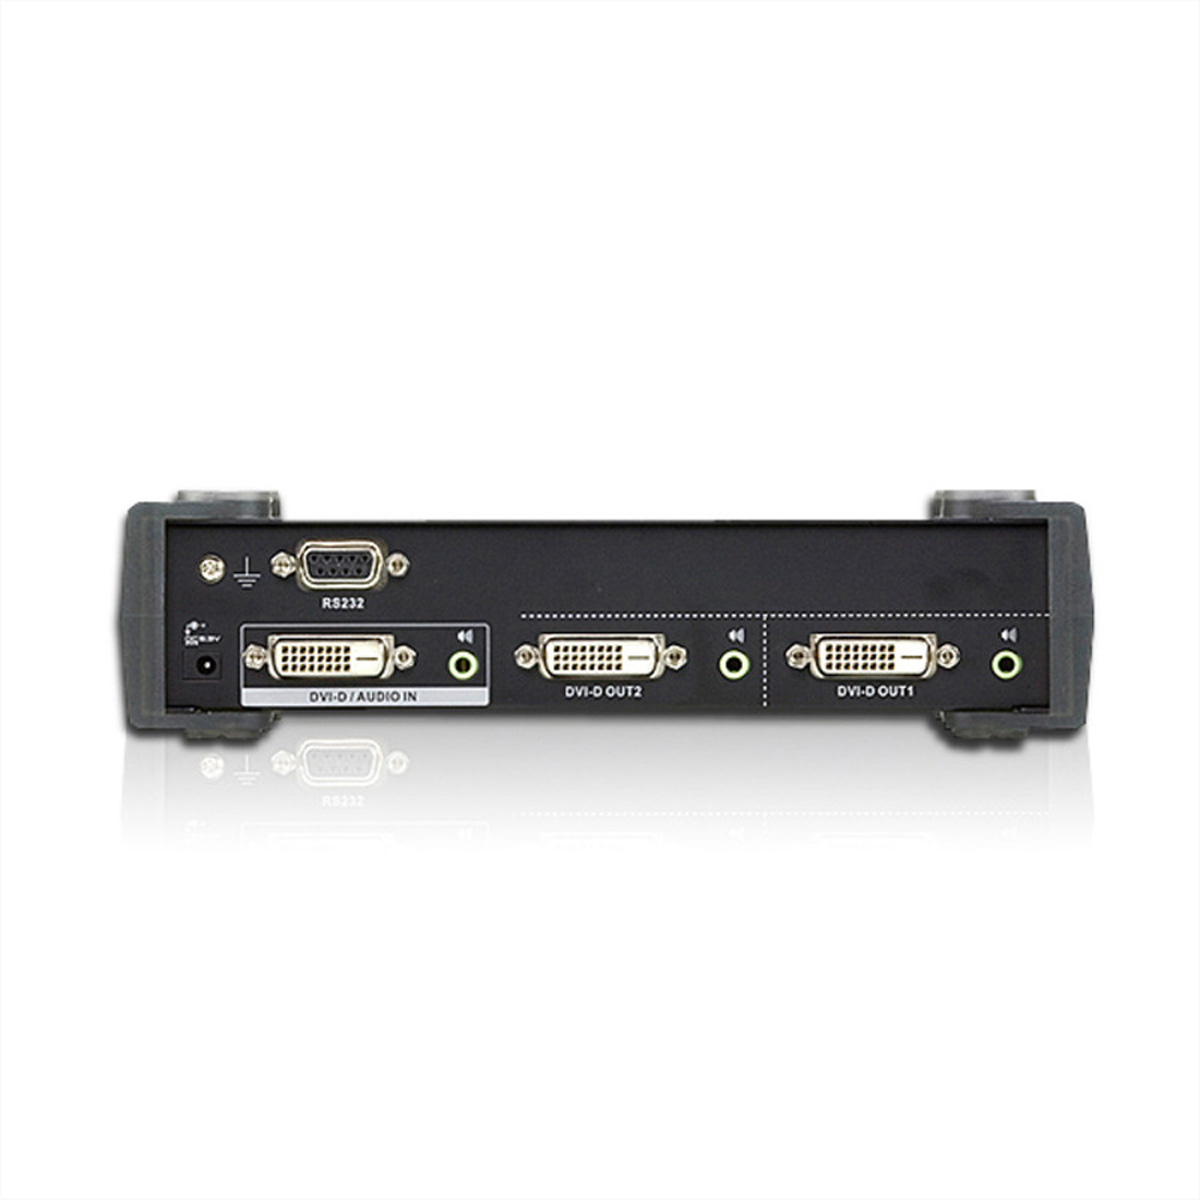 2fach Video-/Audiosplitter, VS172 ATEN Link DVI-Video-Splitter Dual DVI